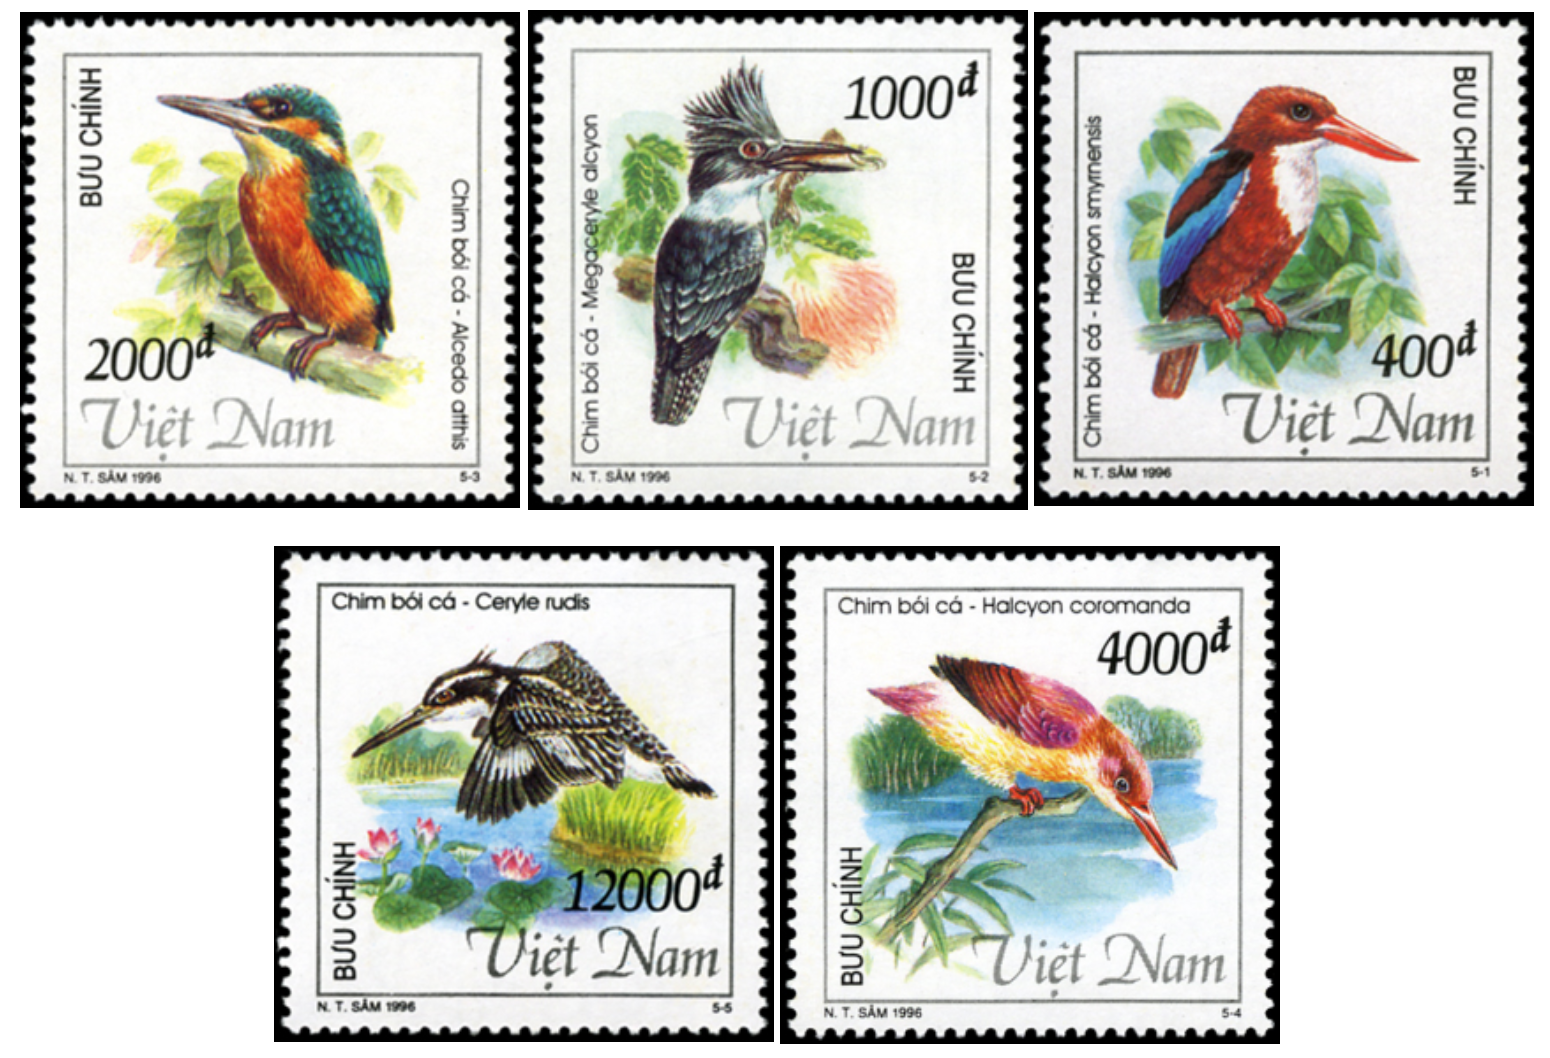 Phát hành bộ tem bưu chính bảo tồn loài chim bói cá - Ảnh 2.